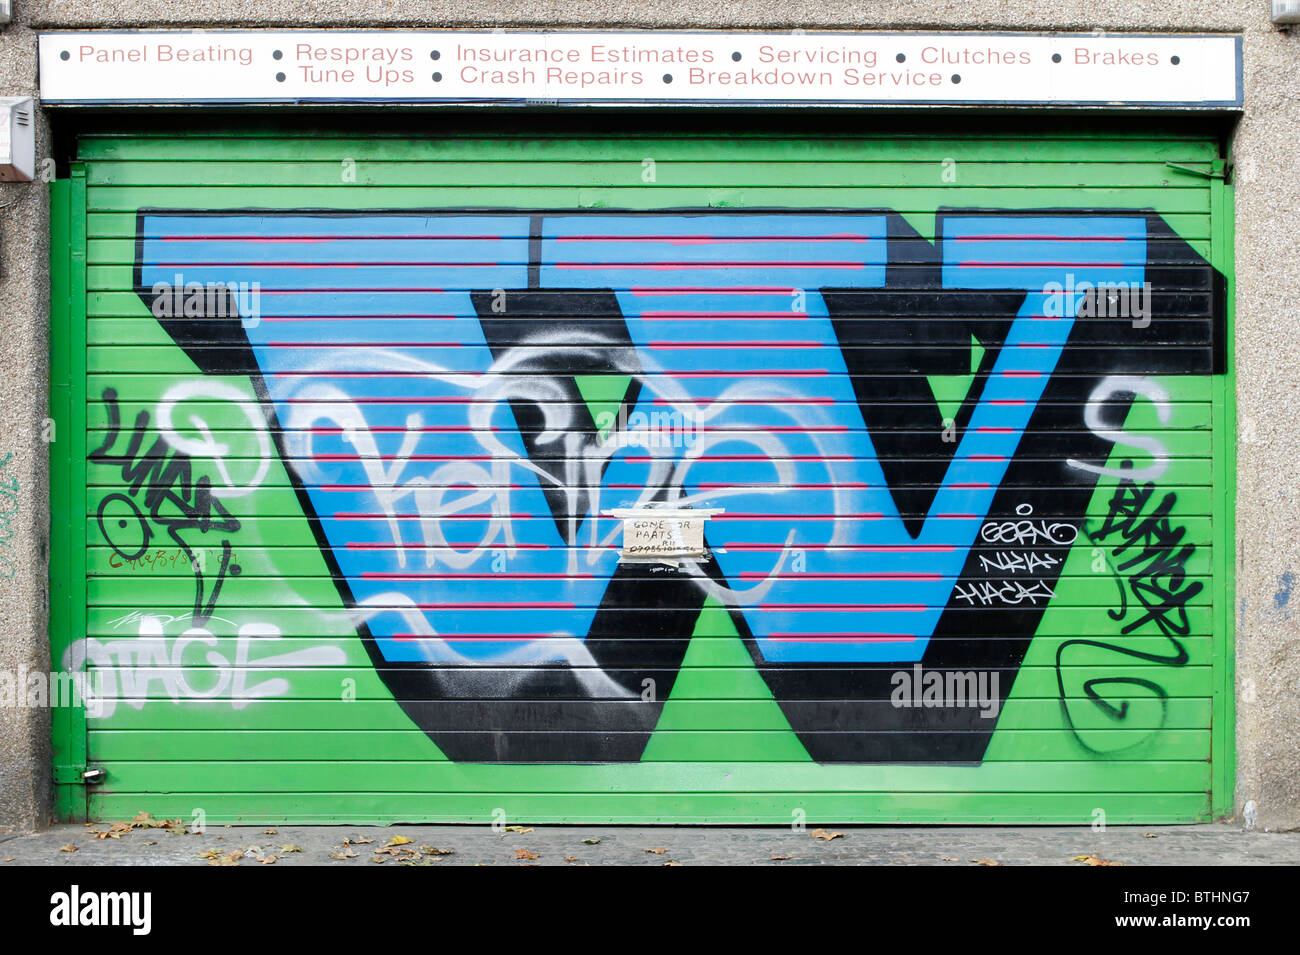 Eine lettres graffitis sur des volets, lettre W, London Shoreditch, Street art stencil, tendance urbaine contemporaine Banque D'Images